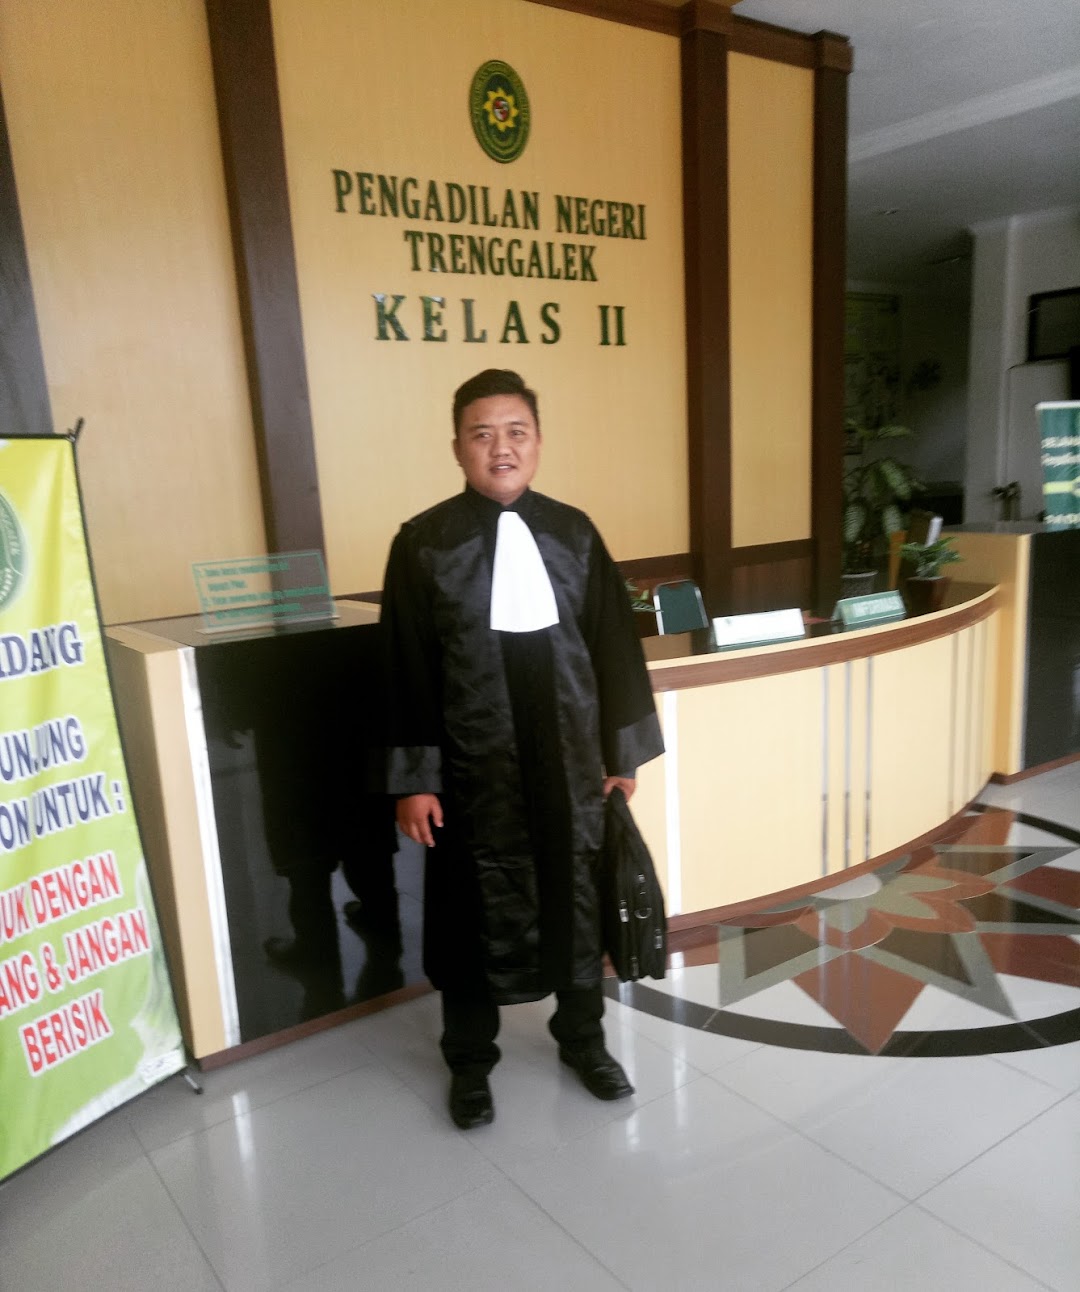 Agung & Partner Advocate Legal Consultan